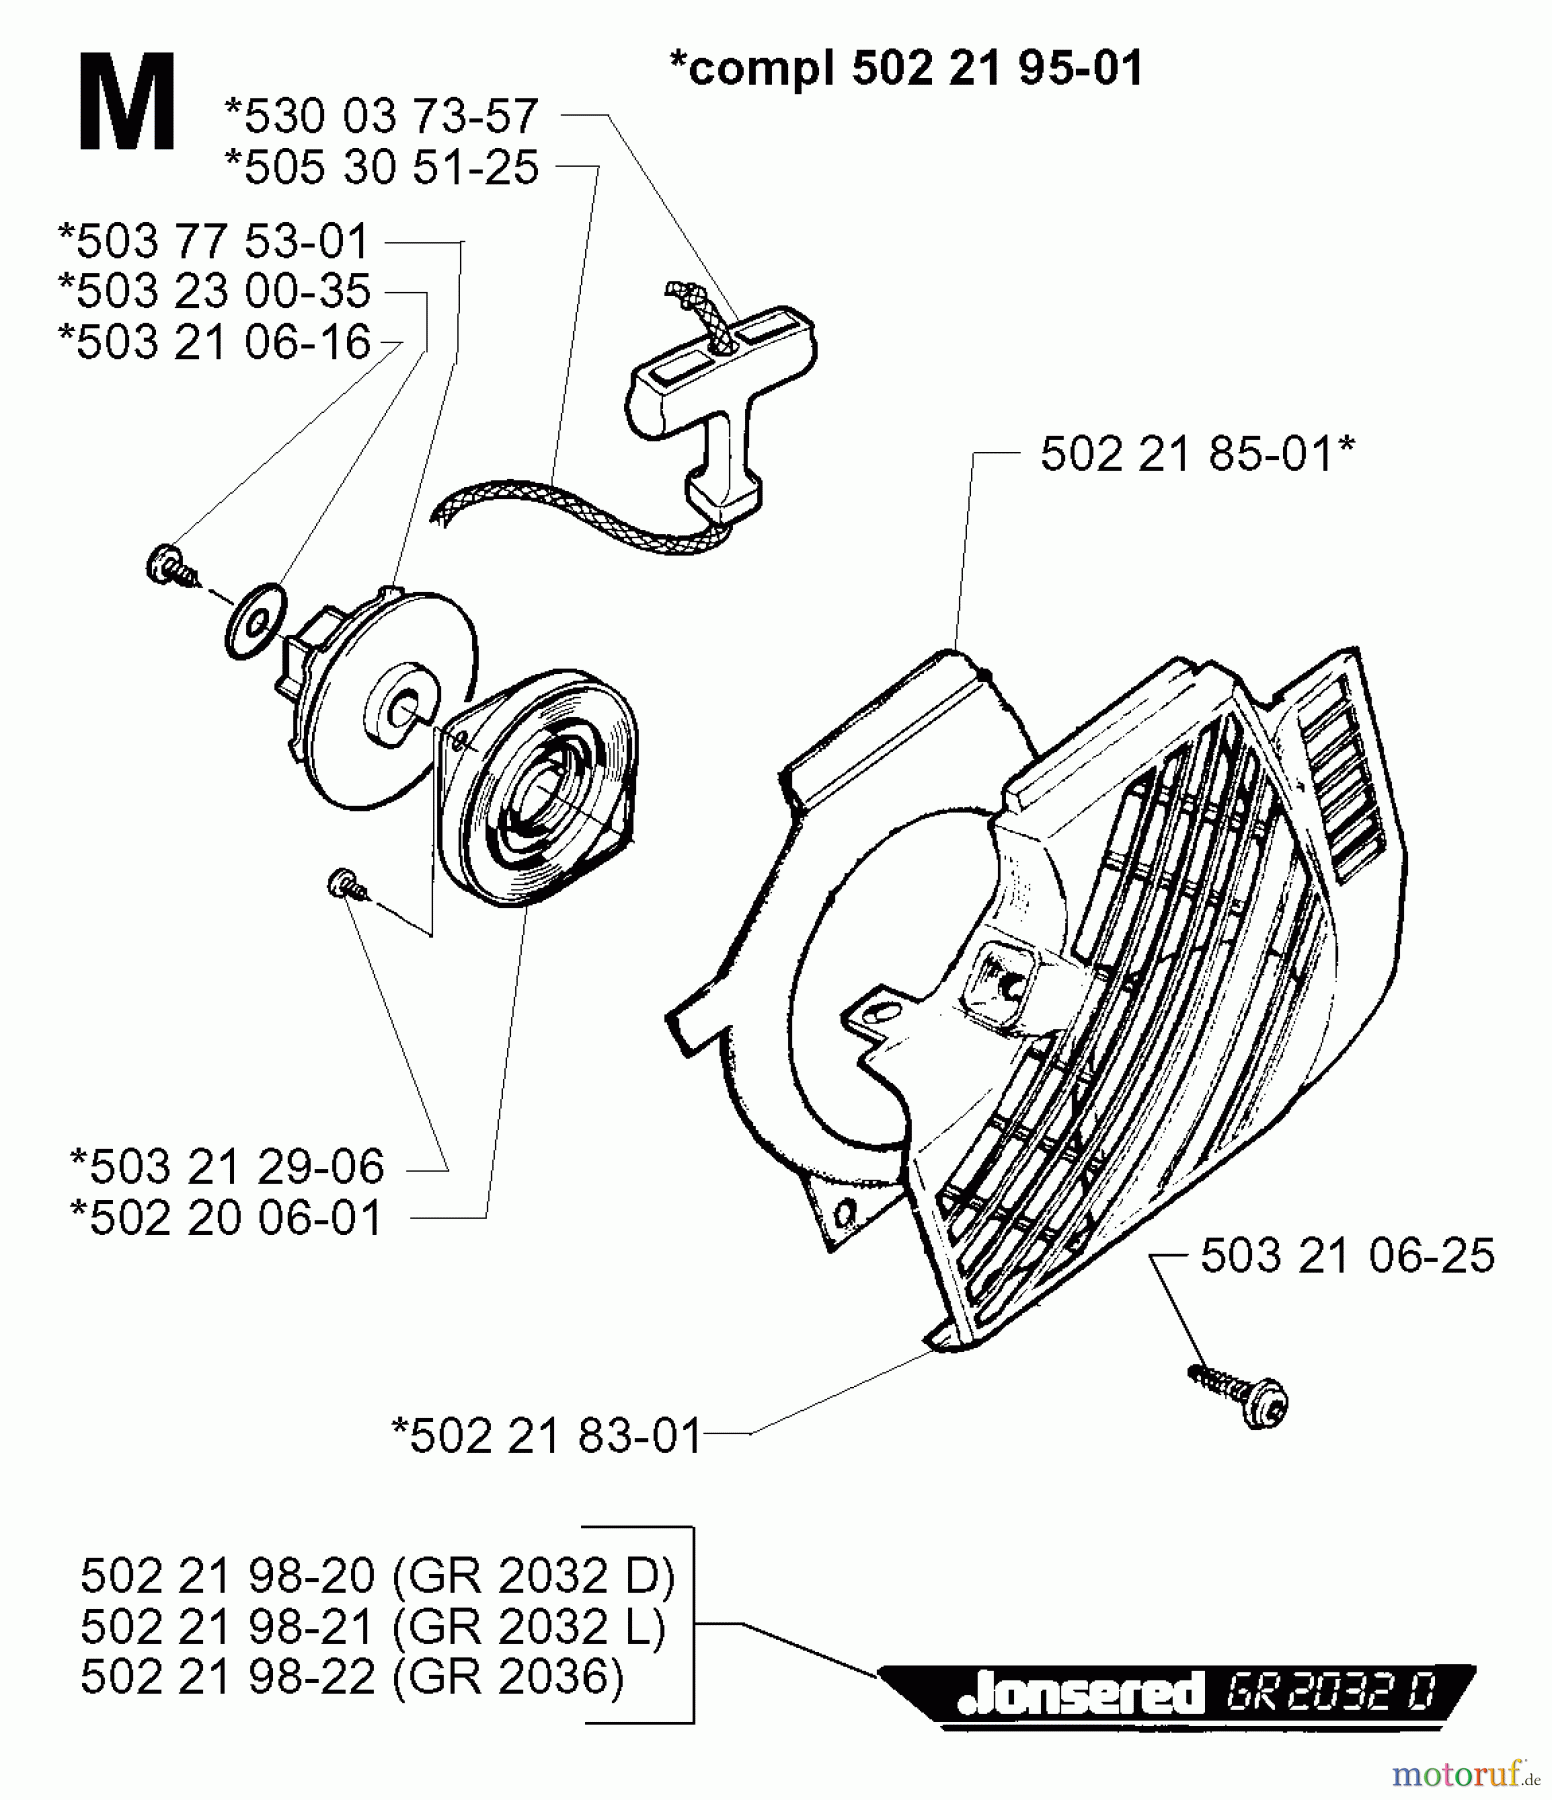  Jonsered Motorsensen, Trimmer GR2036 - Jonsered String/Brush Trimmer (1998-02) STARTER